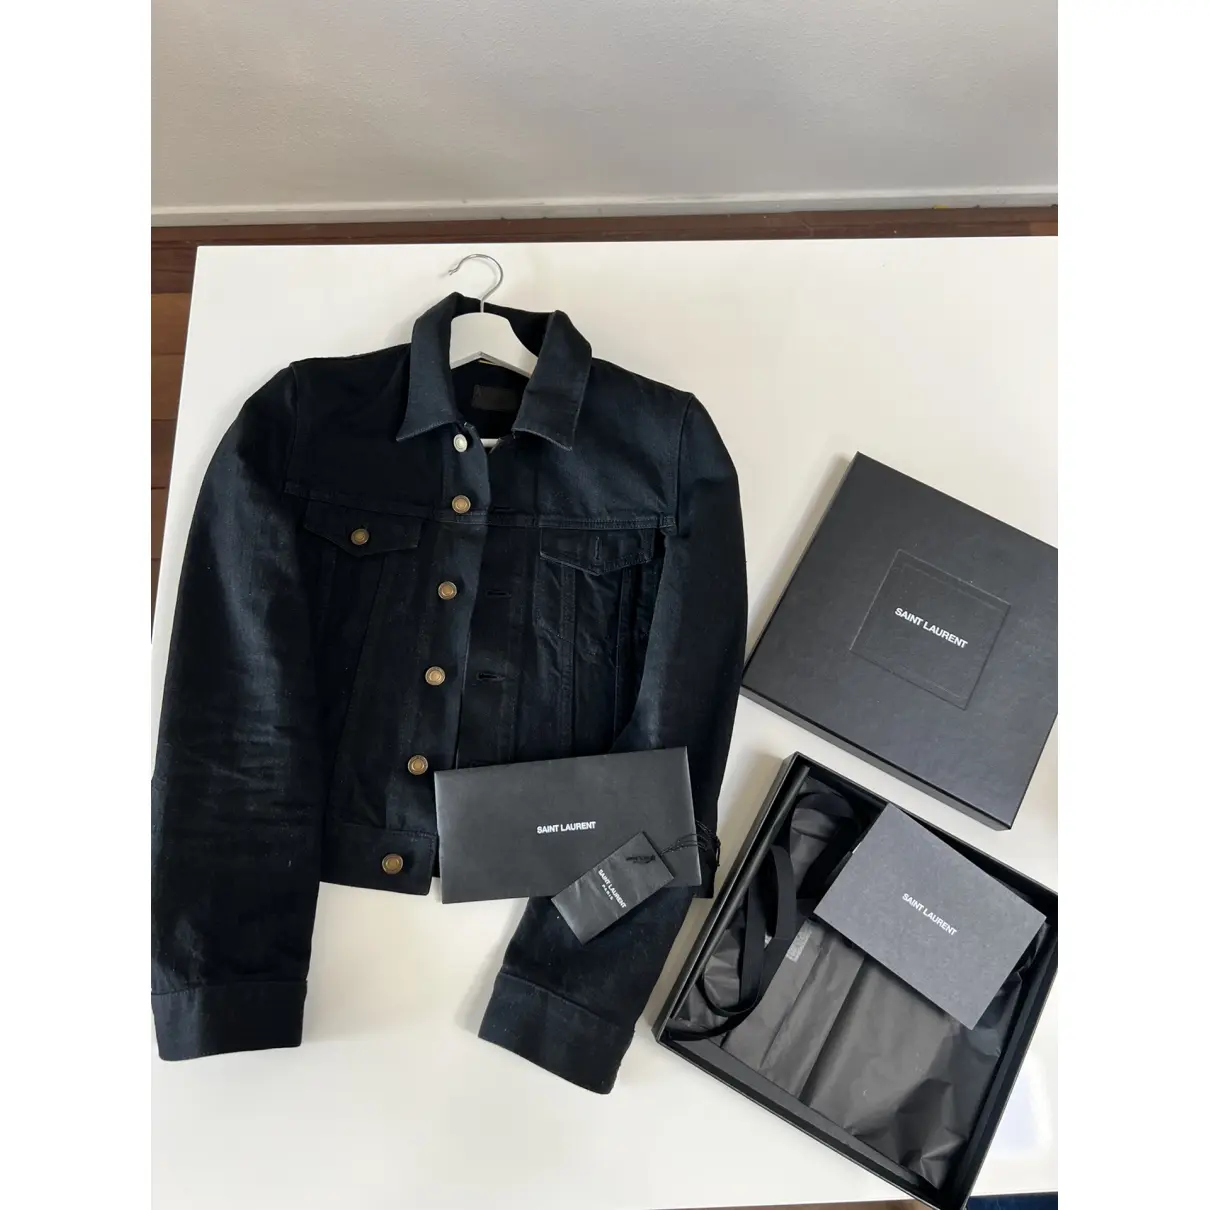 Buy Saint Laurent Jacket online